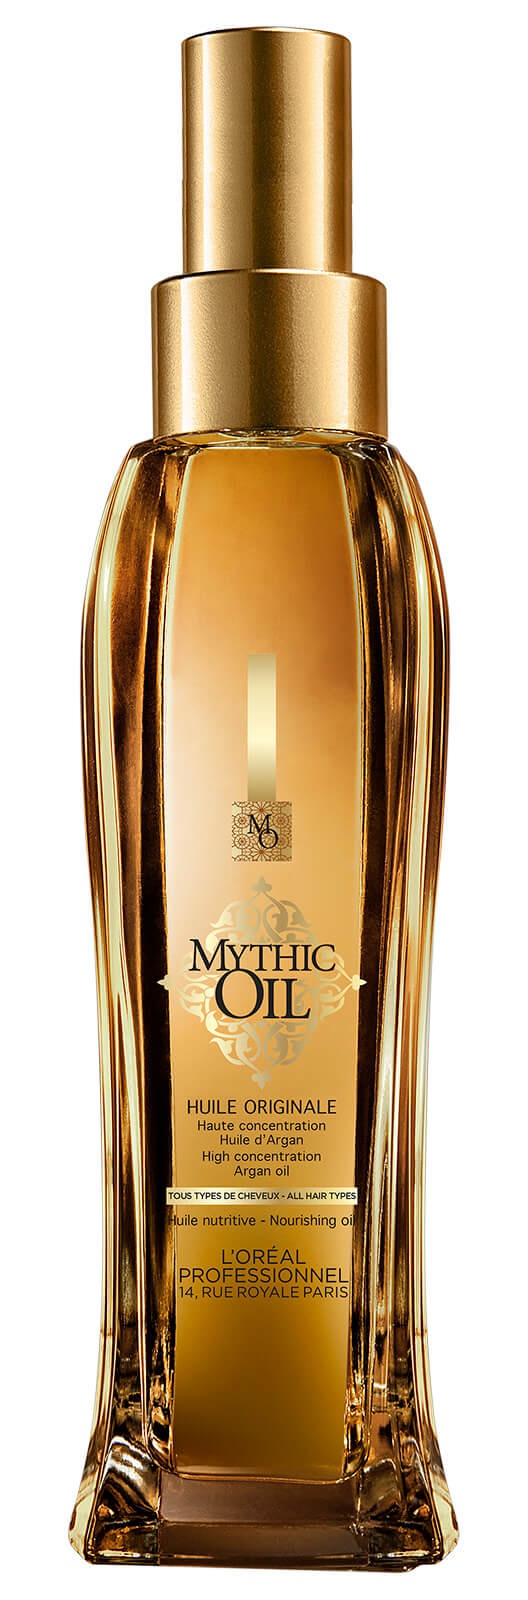 L'Oreal Professionnel Mythic Oil Original Oil